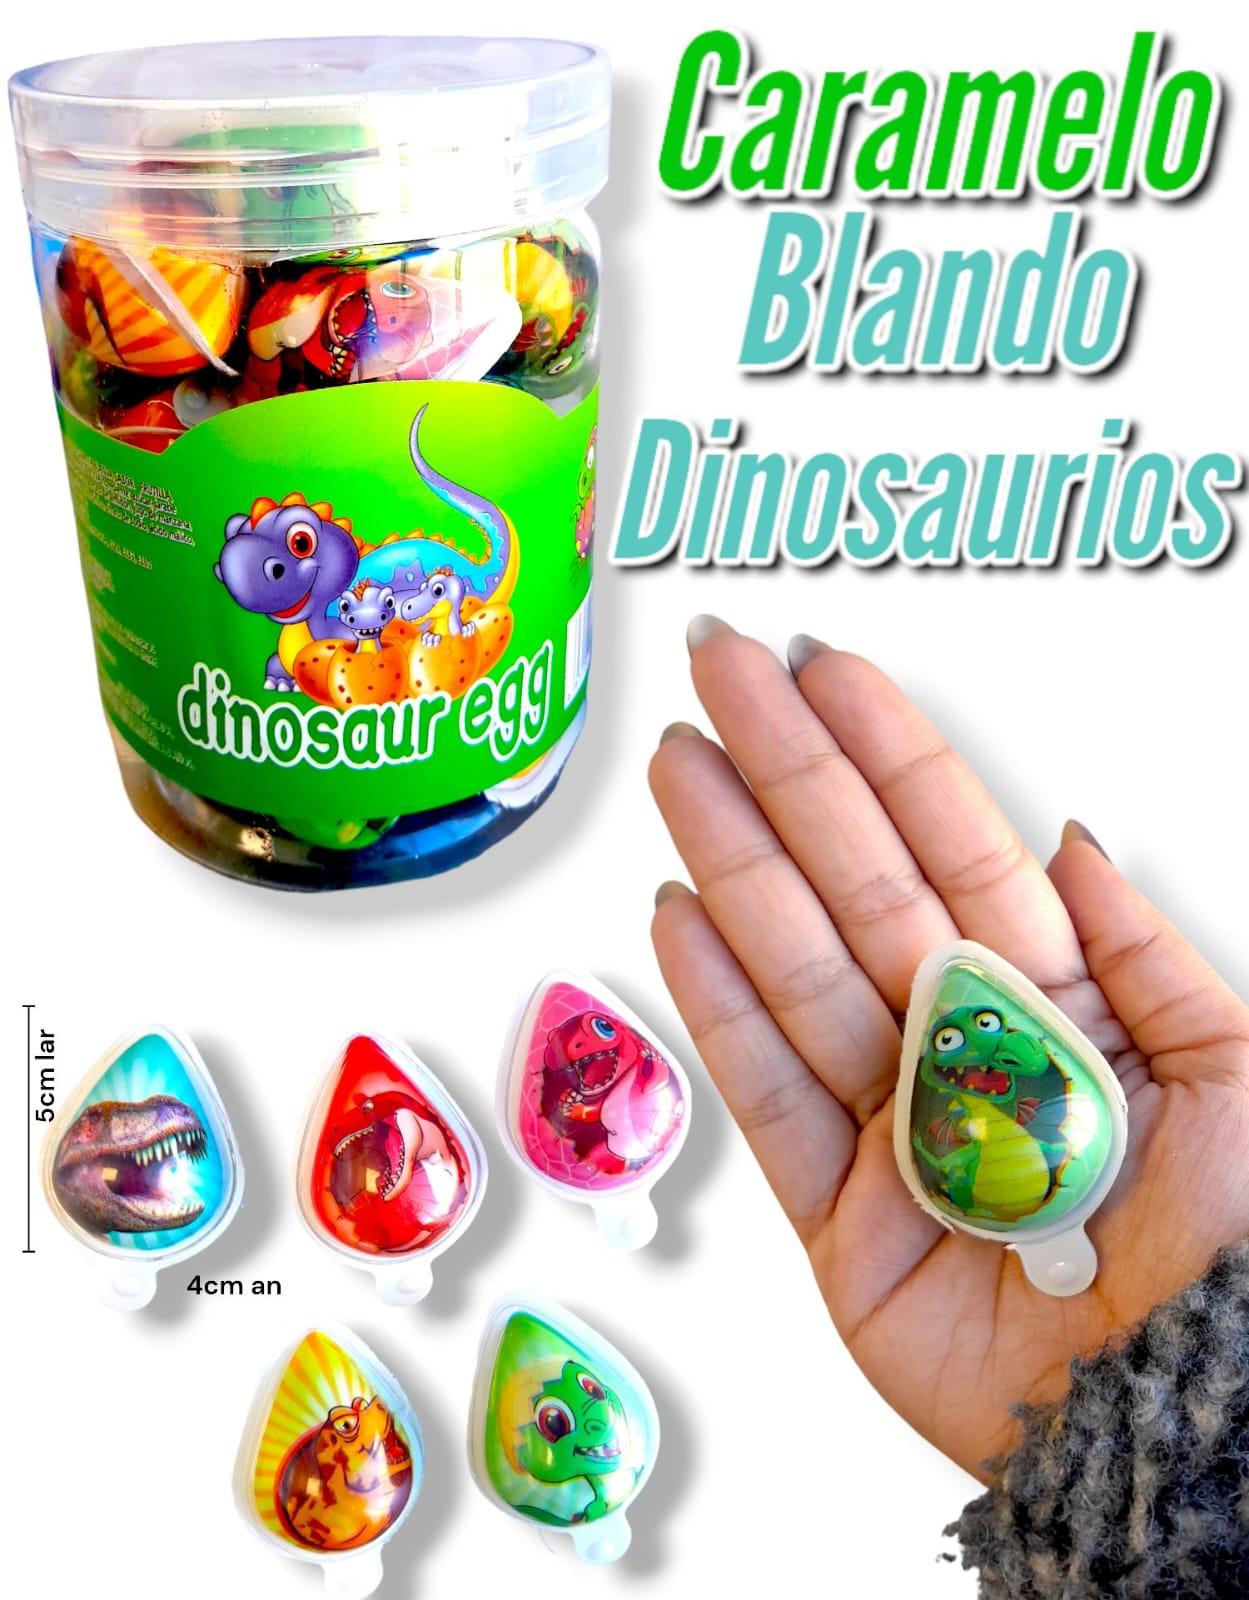 Caramelo Blando DINOSAURIOS 